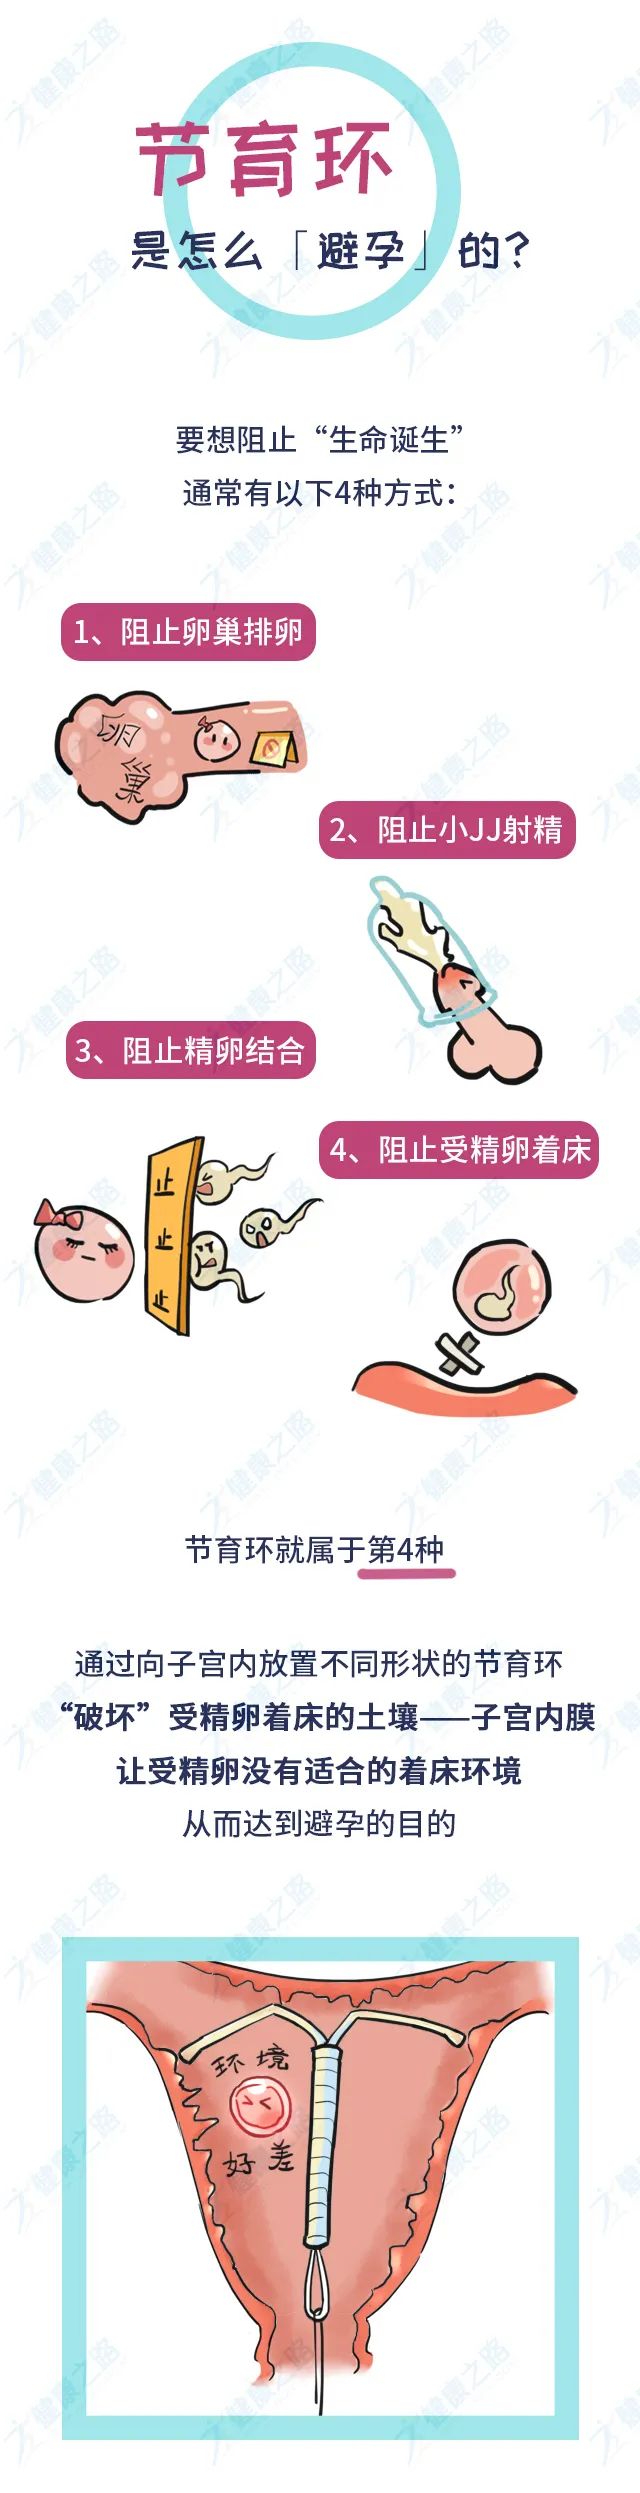 千万中国女性身体里的节育环,到底是避孕神器,还是"定时炸弹?